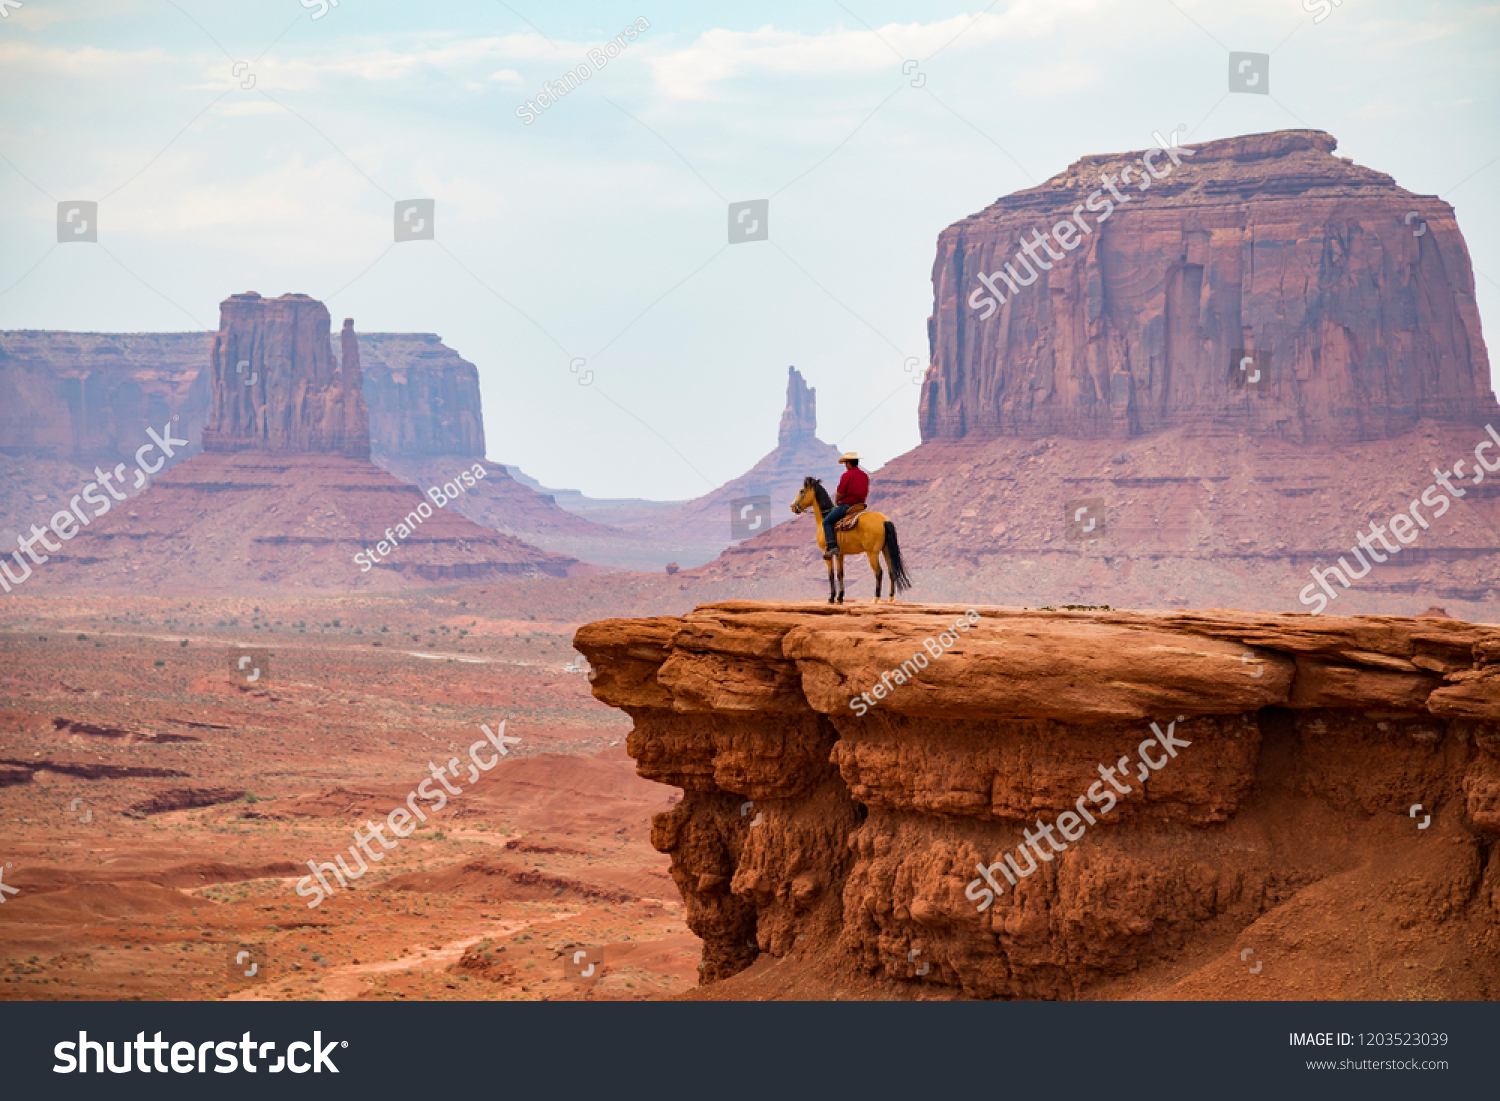 Cowboy looking at the horizon, Monument Valley Navajo Tribal Park #1203523039